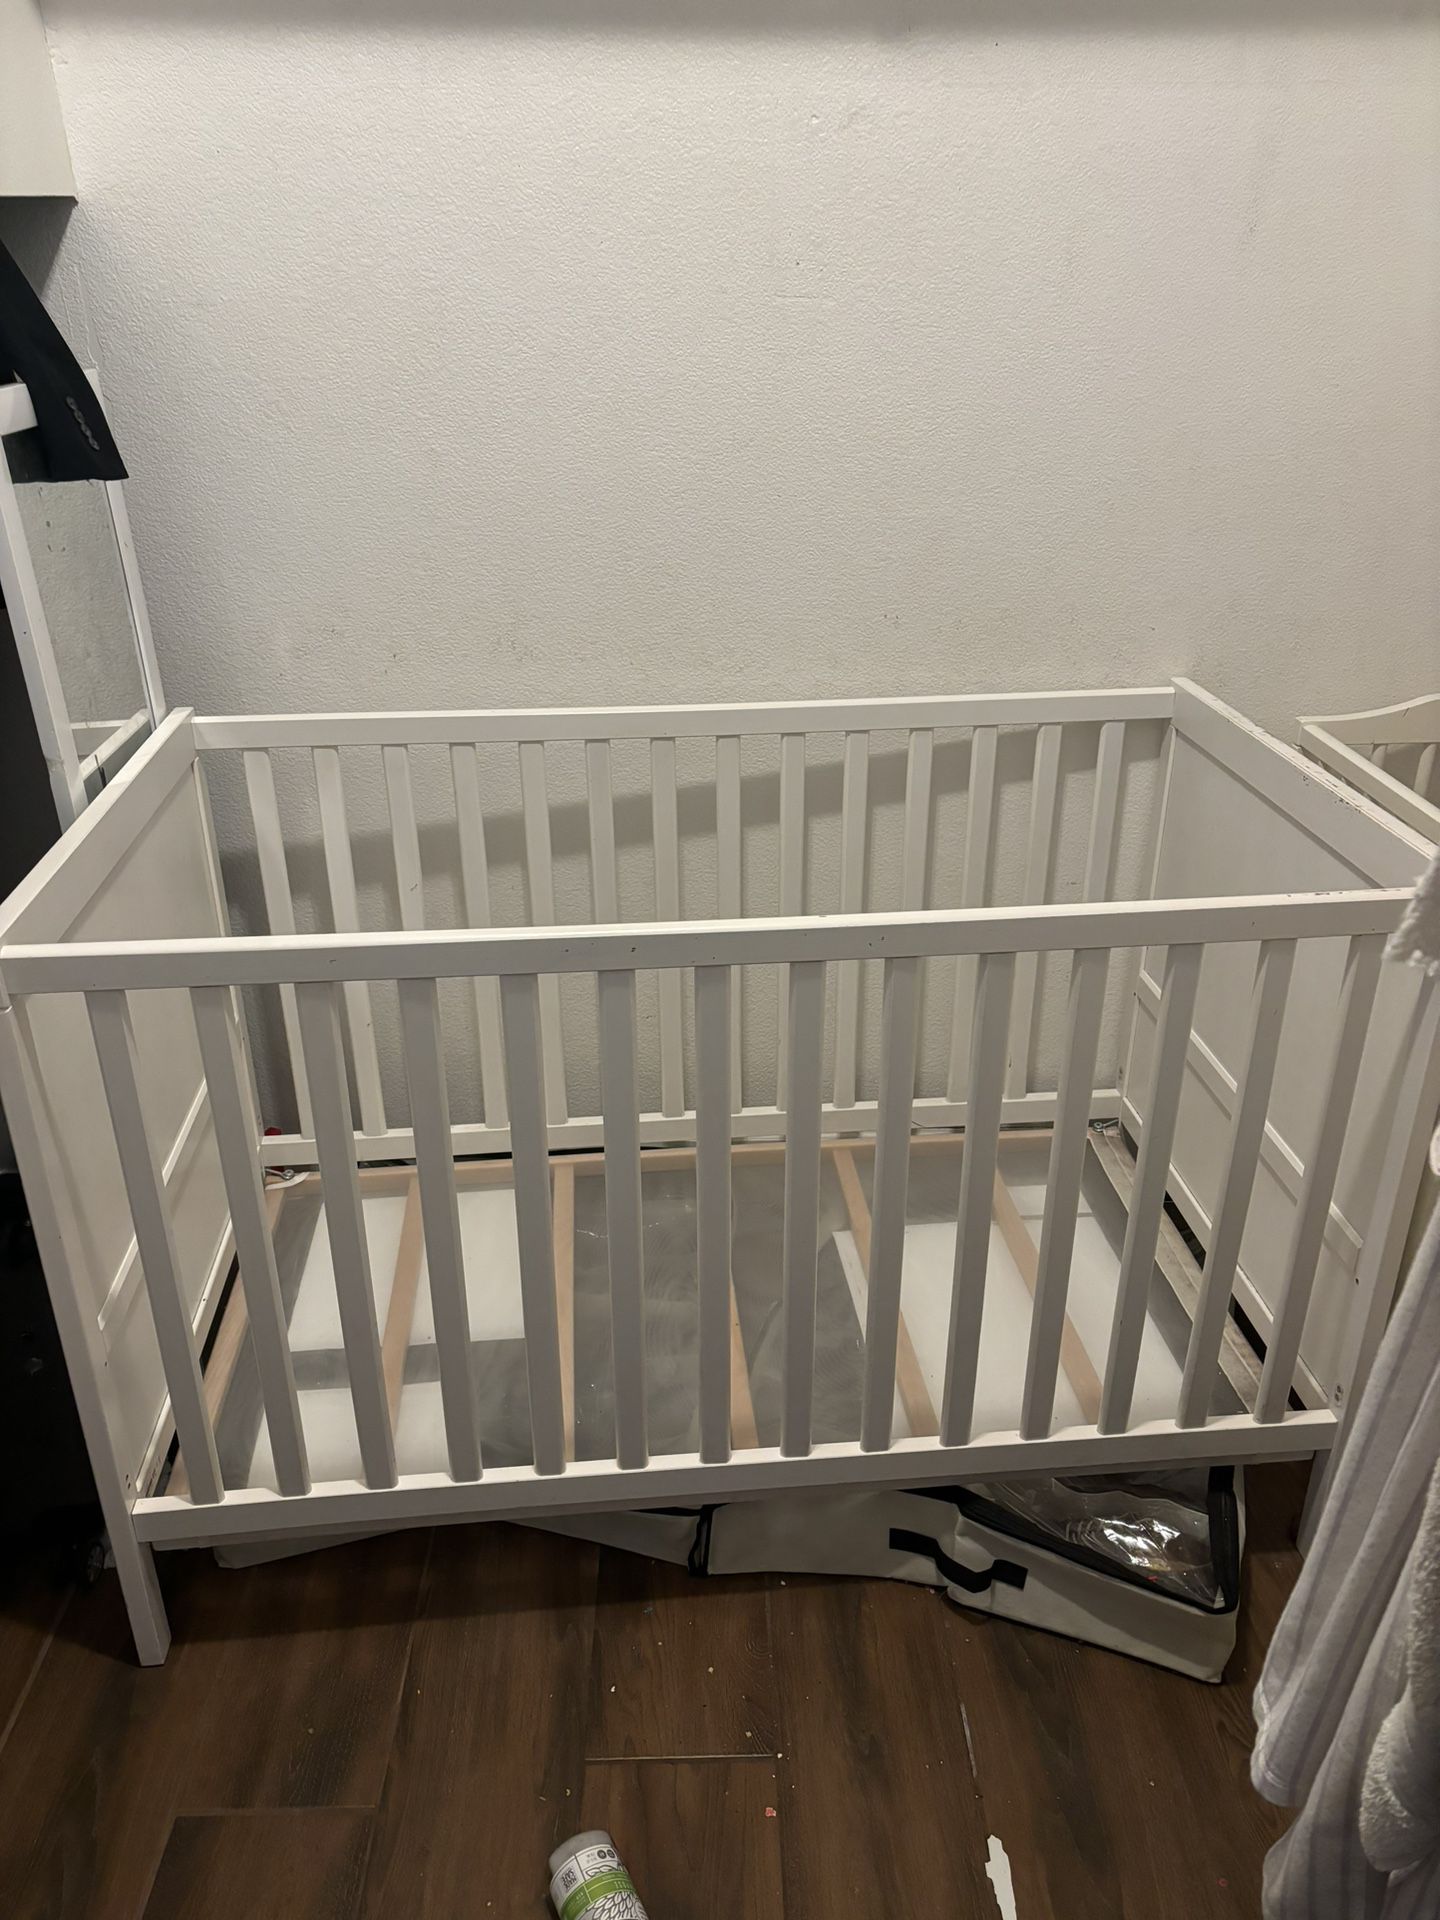 White Baby Crib 